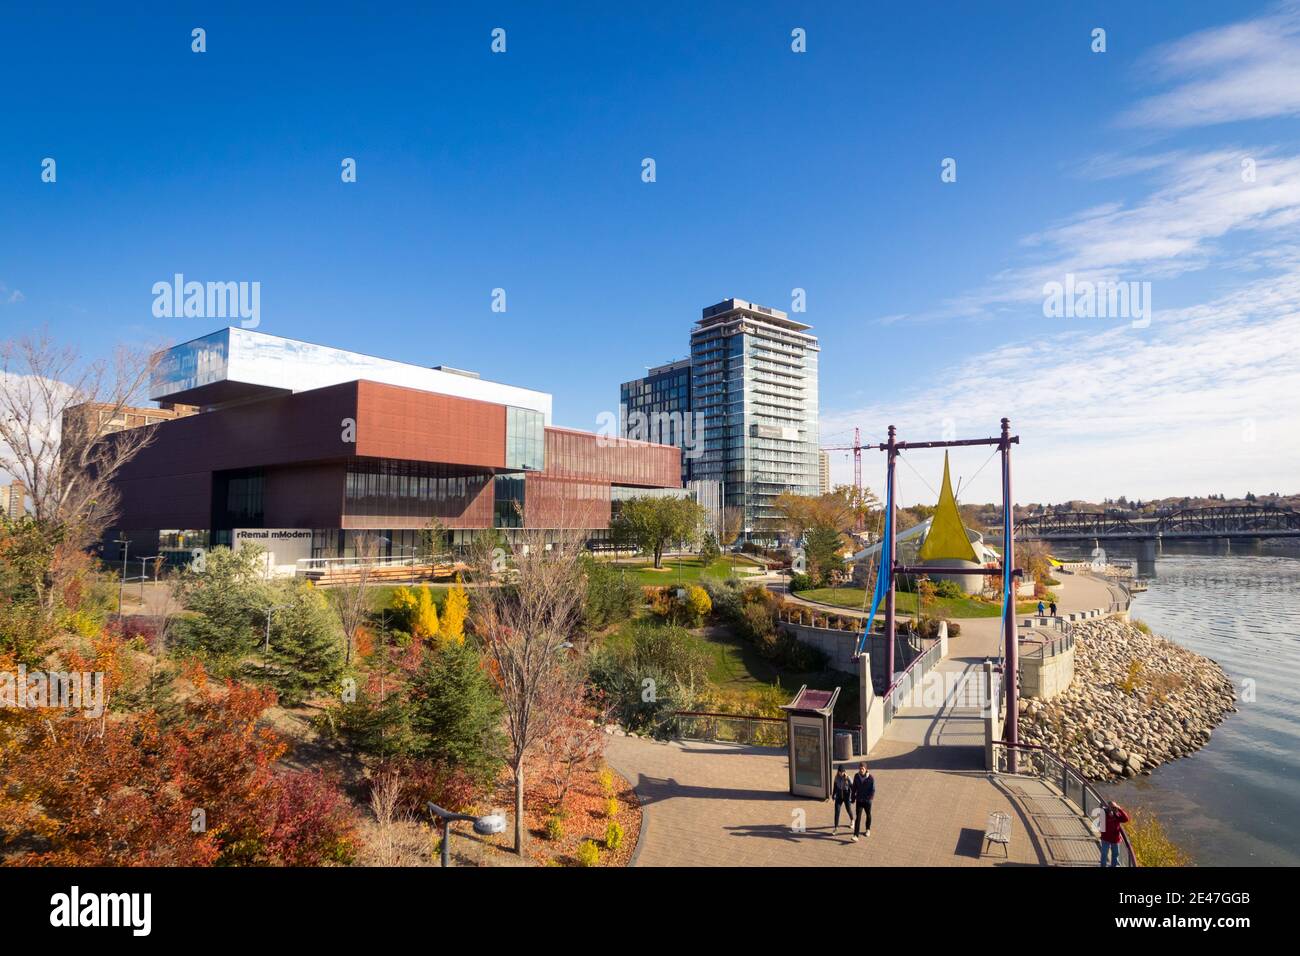 Das Äußere der Remai Modern Art Gallery und River Landing Entwicklung im Herbst. Saskatoon, Saskatchewan, Kanada. Stockfoto